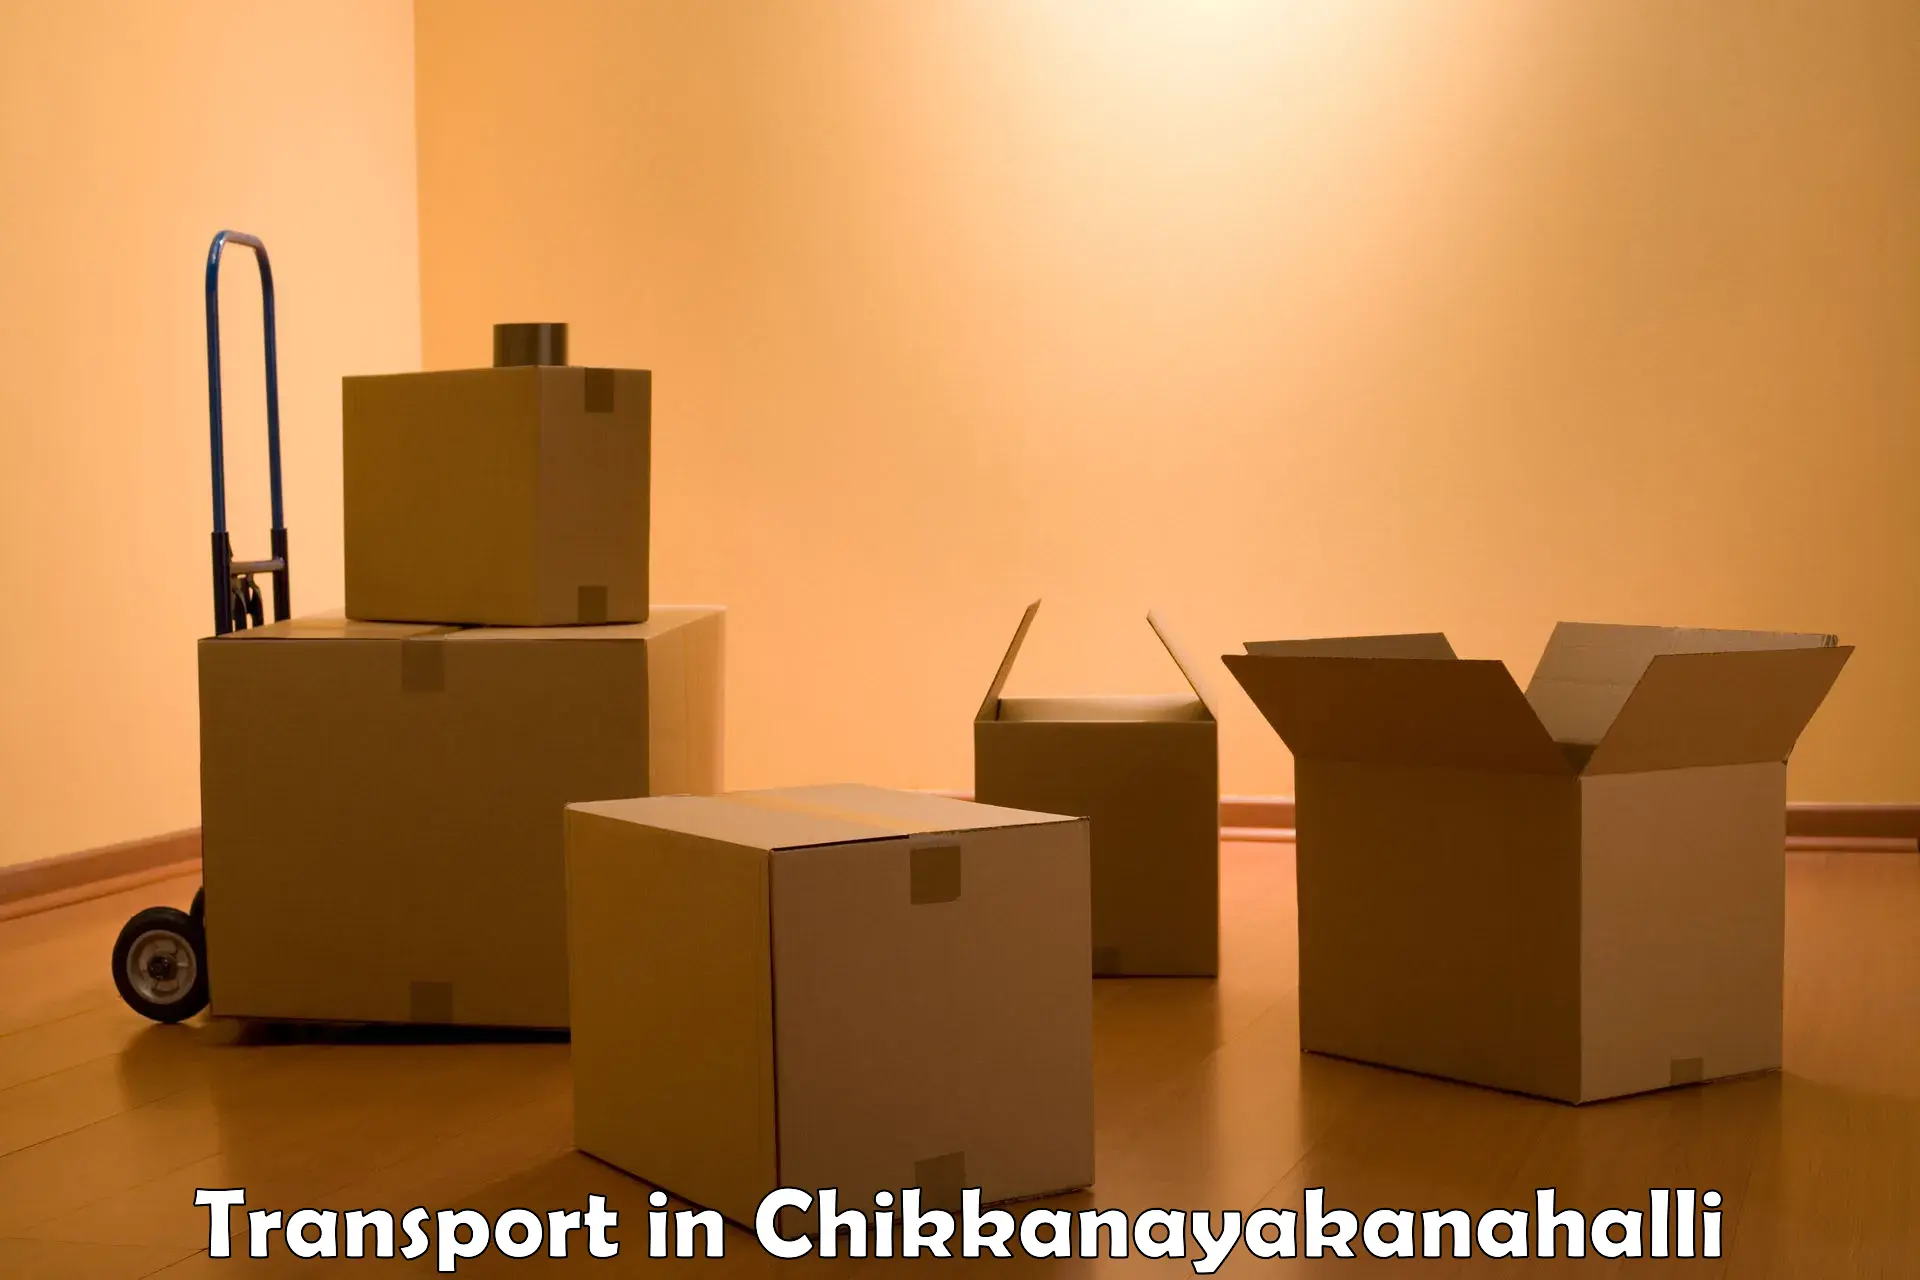 Intercity transport in Chikkanayakanahalli